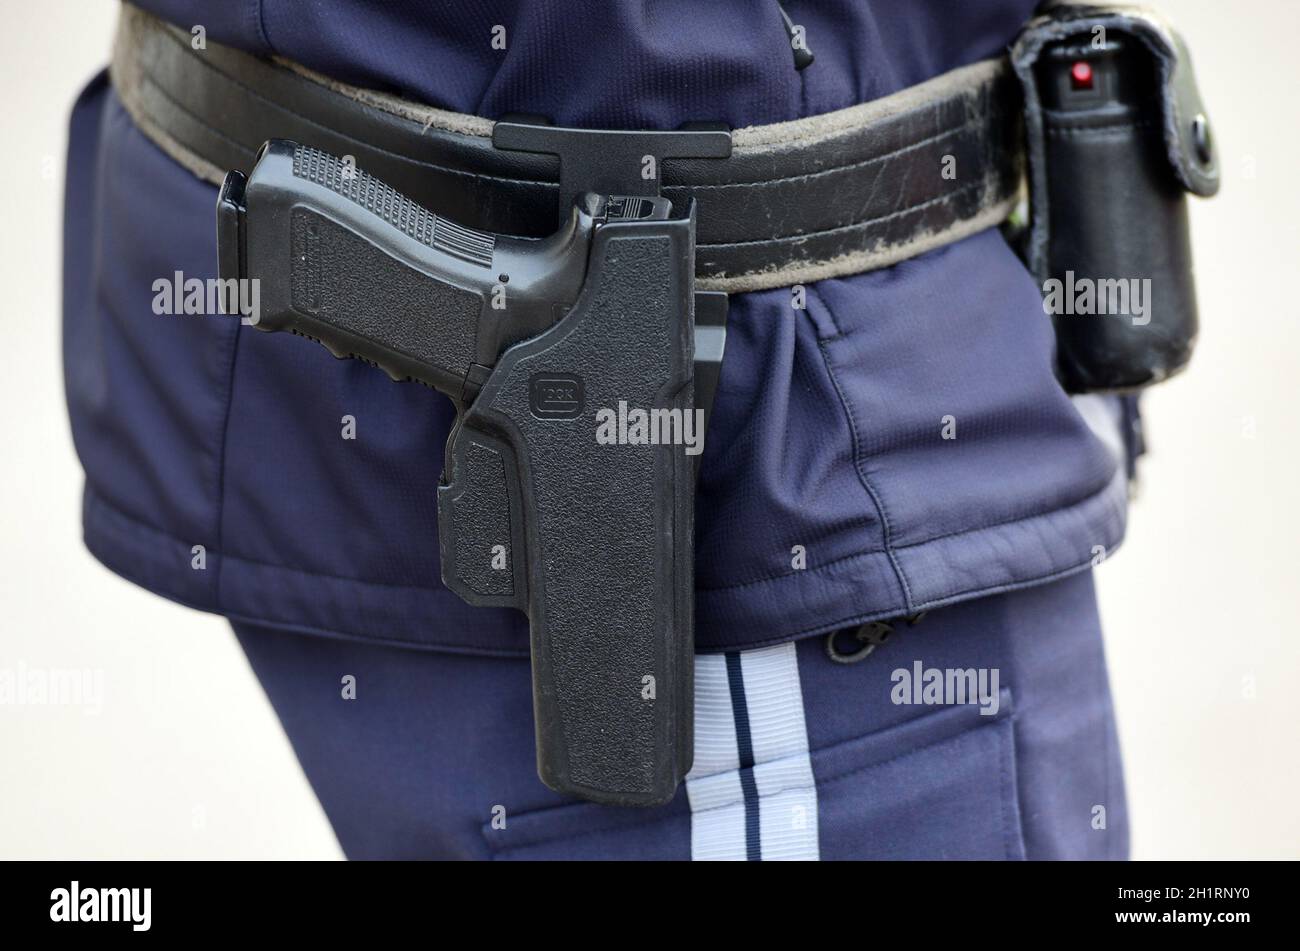 Detailaufnahme einer österreichischen Polizei-Pistole 'Glock', Österreich, Europa - Detail einer österreichischen Polizeipistole 'Glock', Österreich, Europa Stockfoto